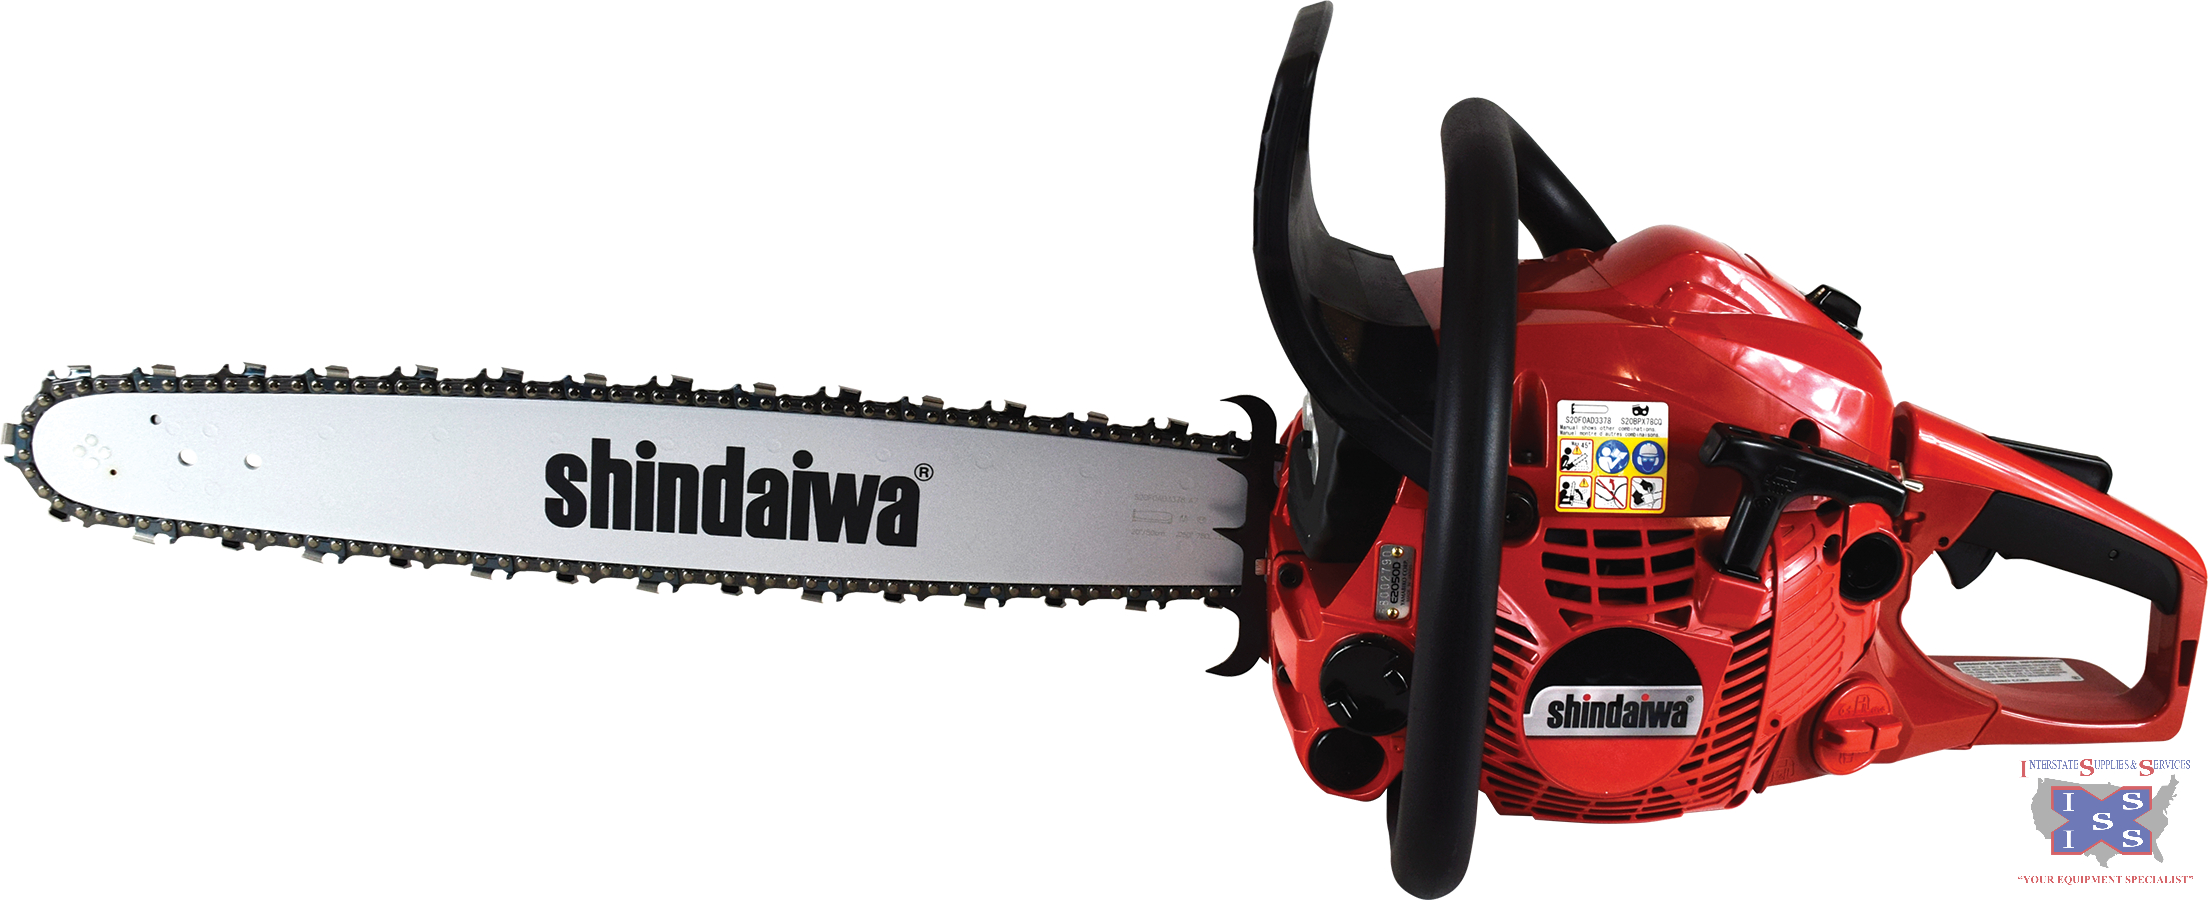 Shindaiwa 50.2cc engine, 16" bar 492 Chainsaw